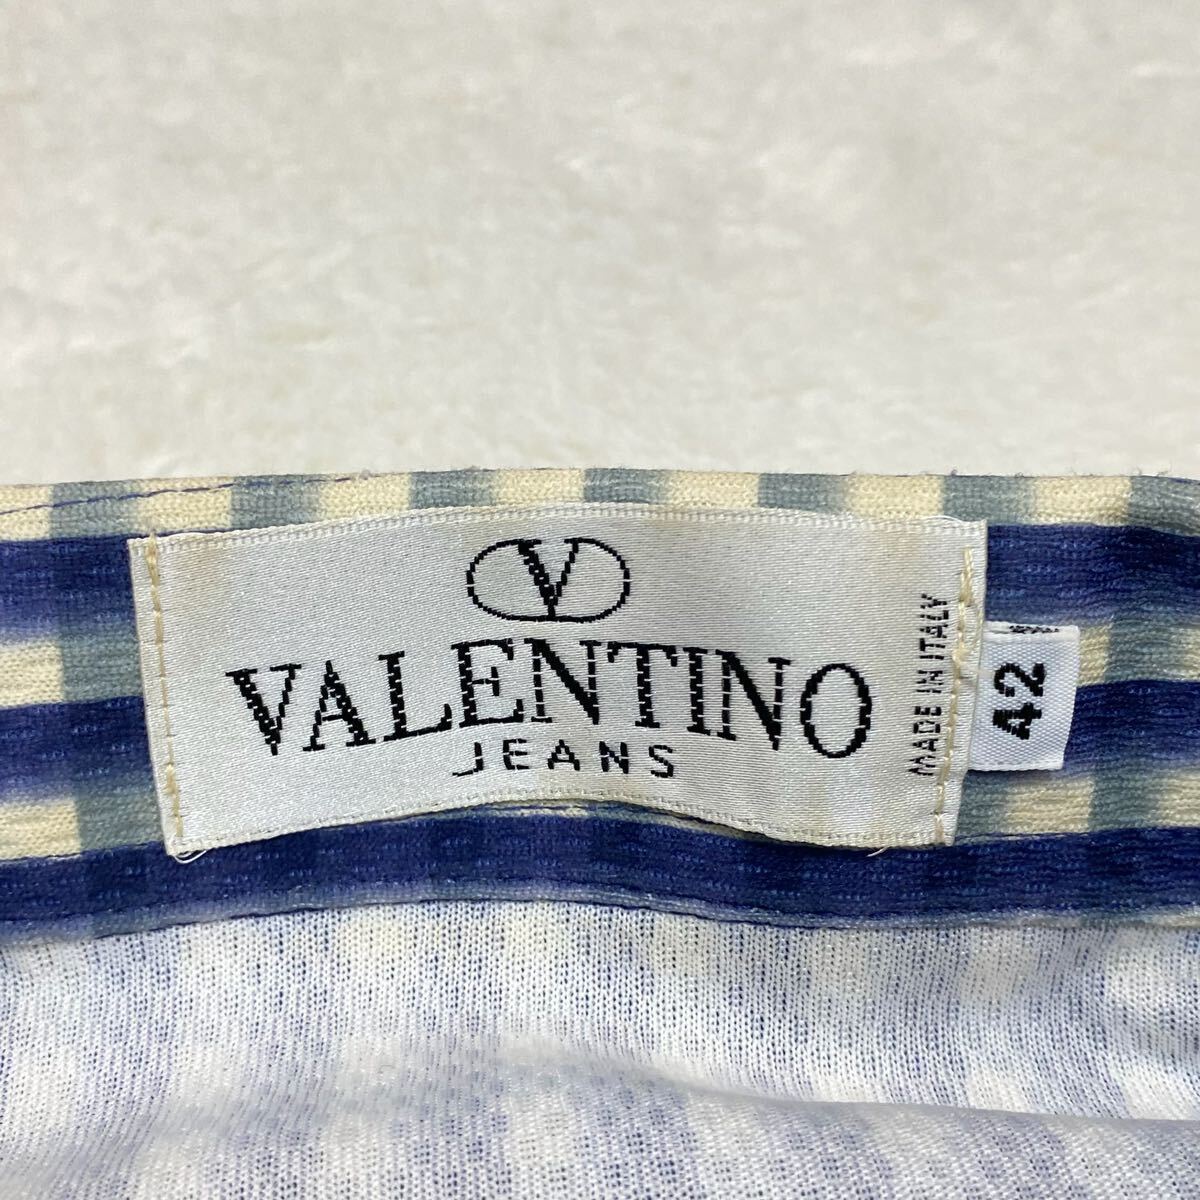 VALENTINO ヴァレンティノ バレンチノ イタリア製 チェックシャツ 長袖シャツ カジュアルシャツ メンズ 42サイズ メンズ M〜L相当の画像4